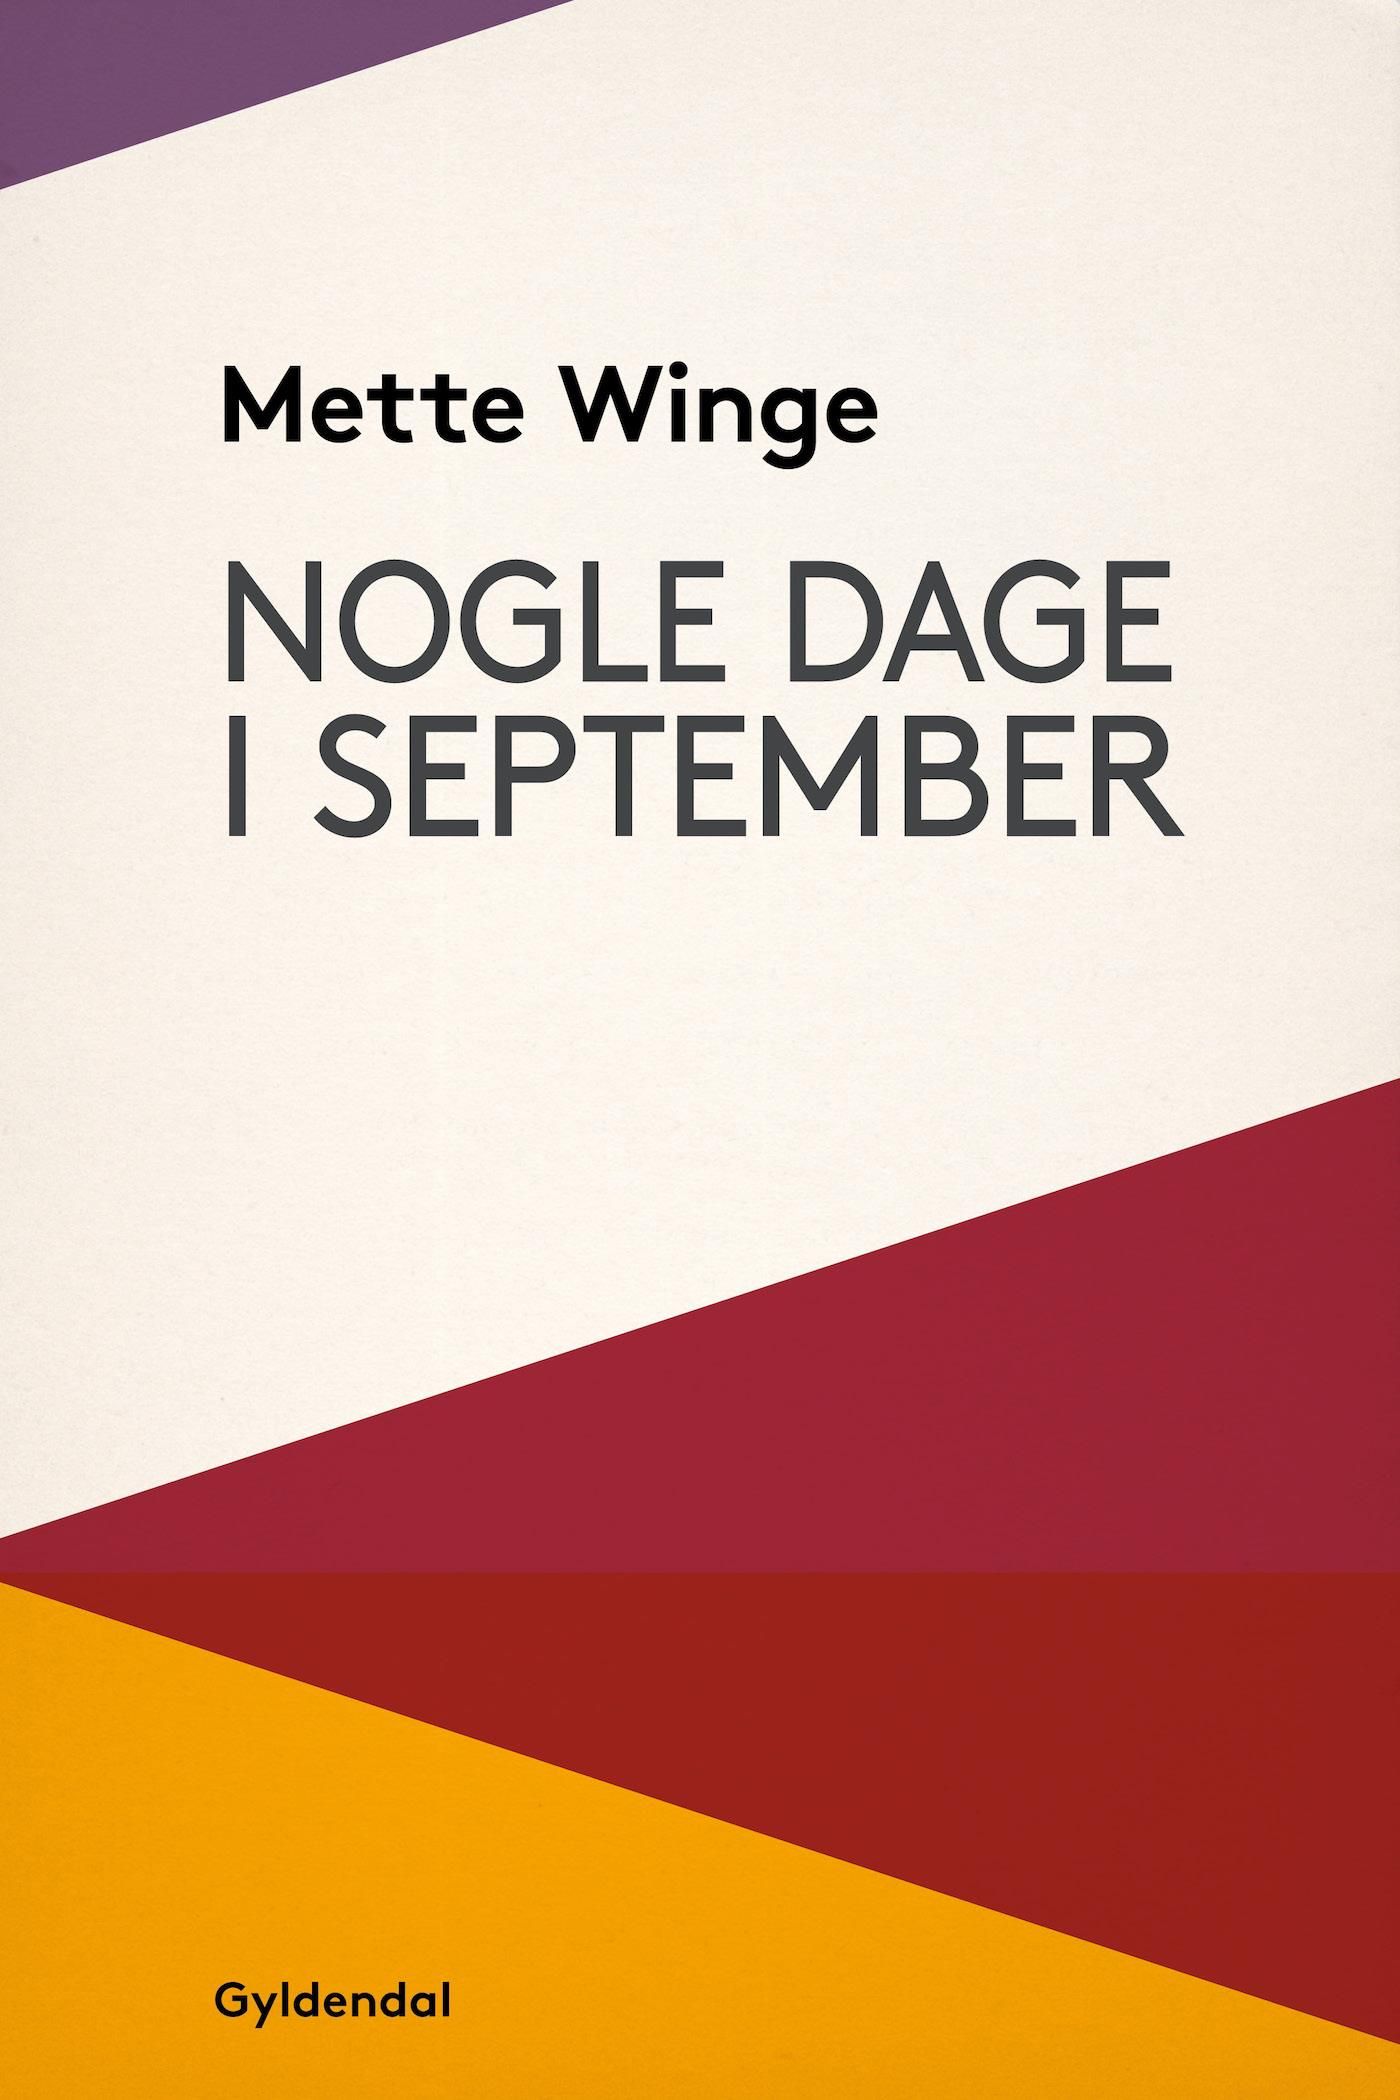 Nogle dage i september, e-bog af Mette Winge